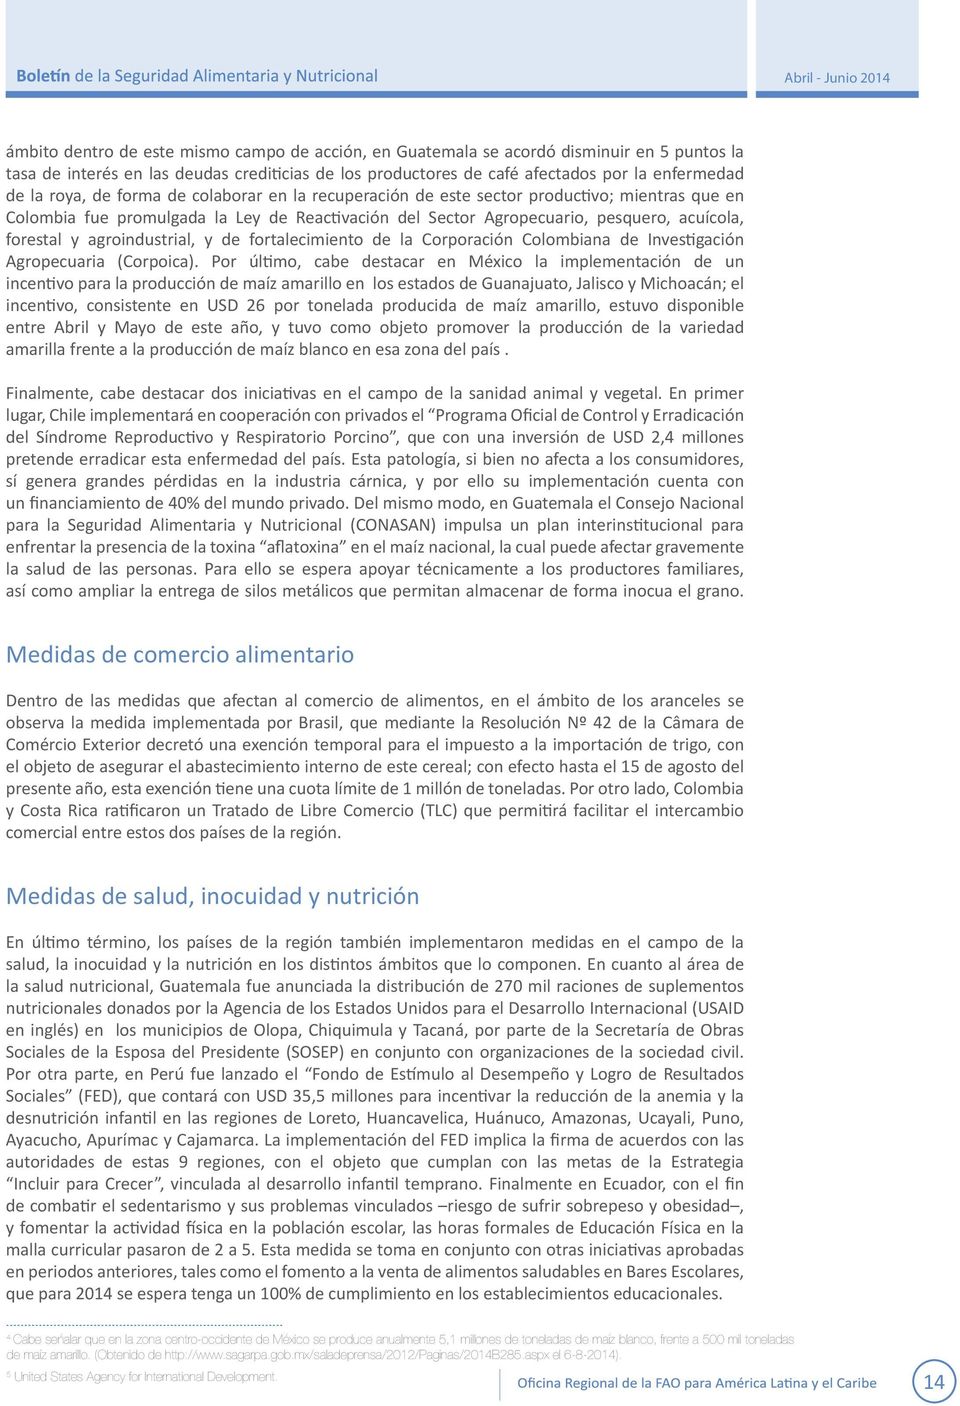 agroindustrial, y de fortalecimiento de la Corporación Colombiana de Investigación Agropecuaria (Corpoica).